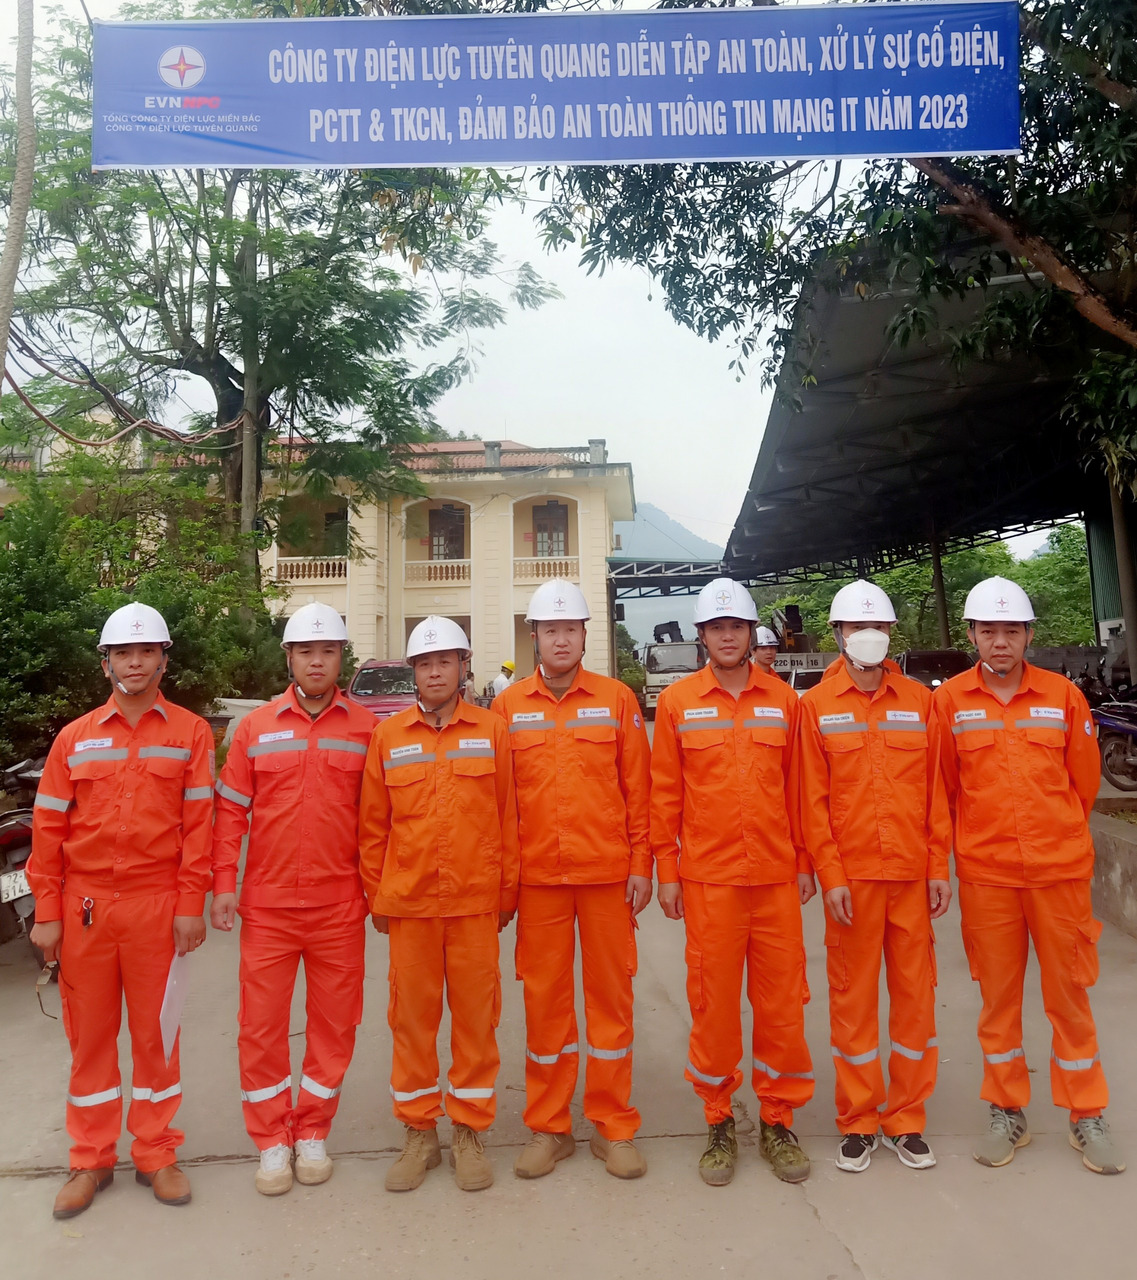 Xí nghiệp Dịch vụ Điện lực Tuyên Quang phối hợp với PC Tuyên Quang diễn tập PCTT&TKCN, diễn tập an toàn (3 trong 1) năm 2023